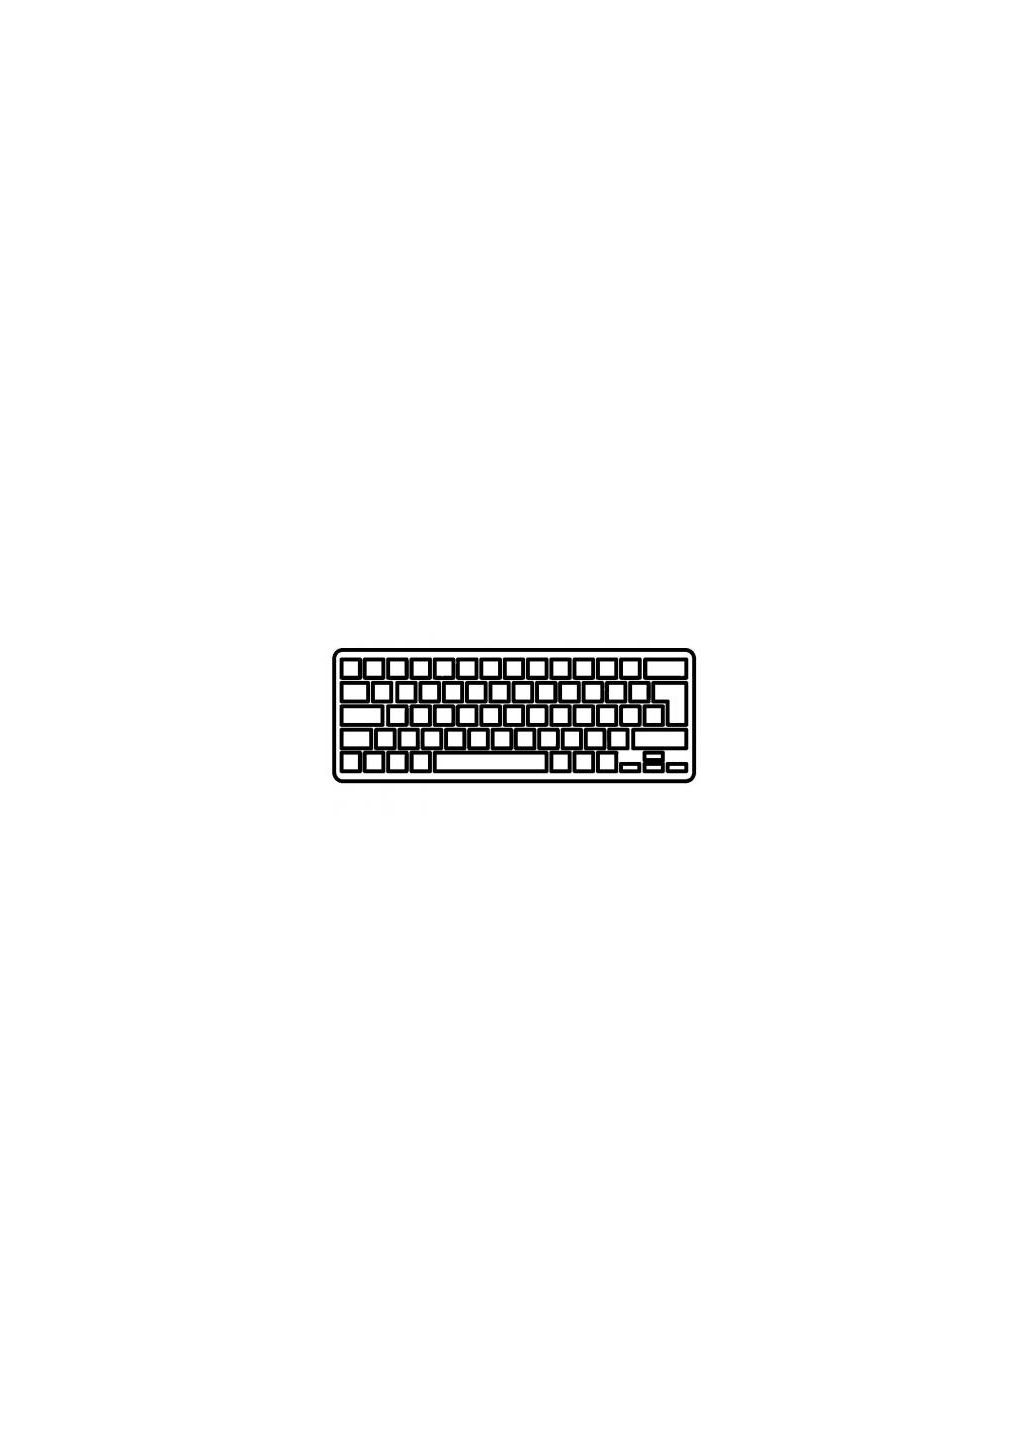 Клавиатура ноутбука (A43816) Asus x450 series черная без рамки ua (276707838)